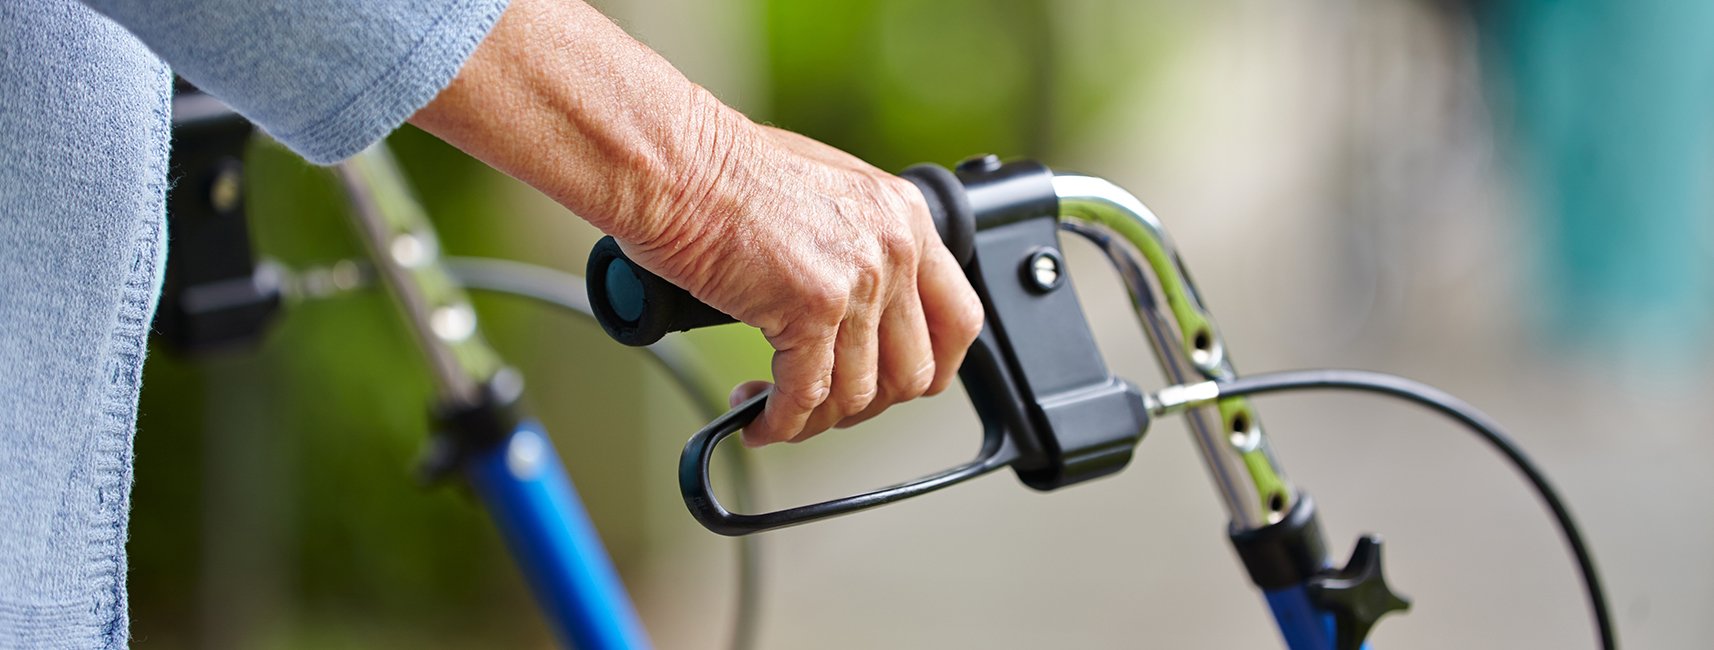 rollator als hulpmiddel voor ouderen om langer thuis te wonen